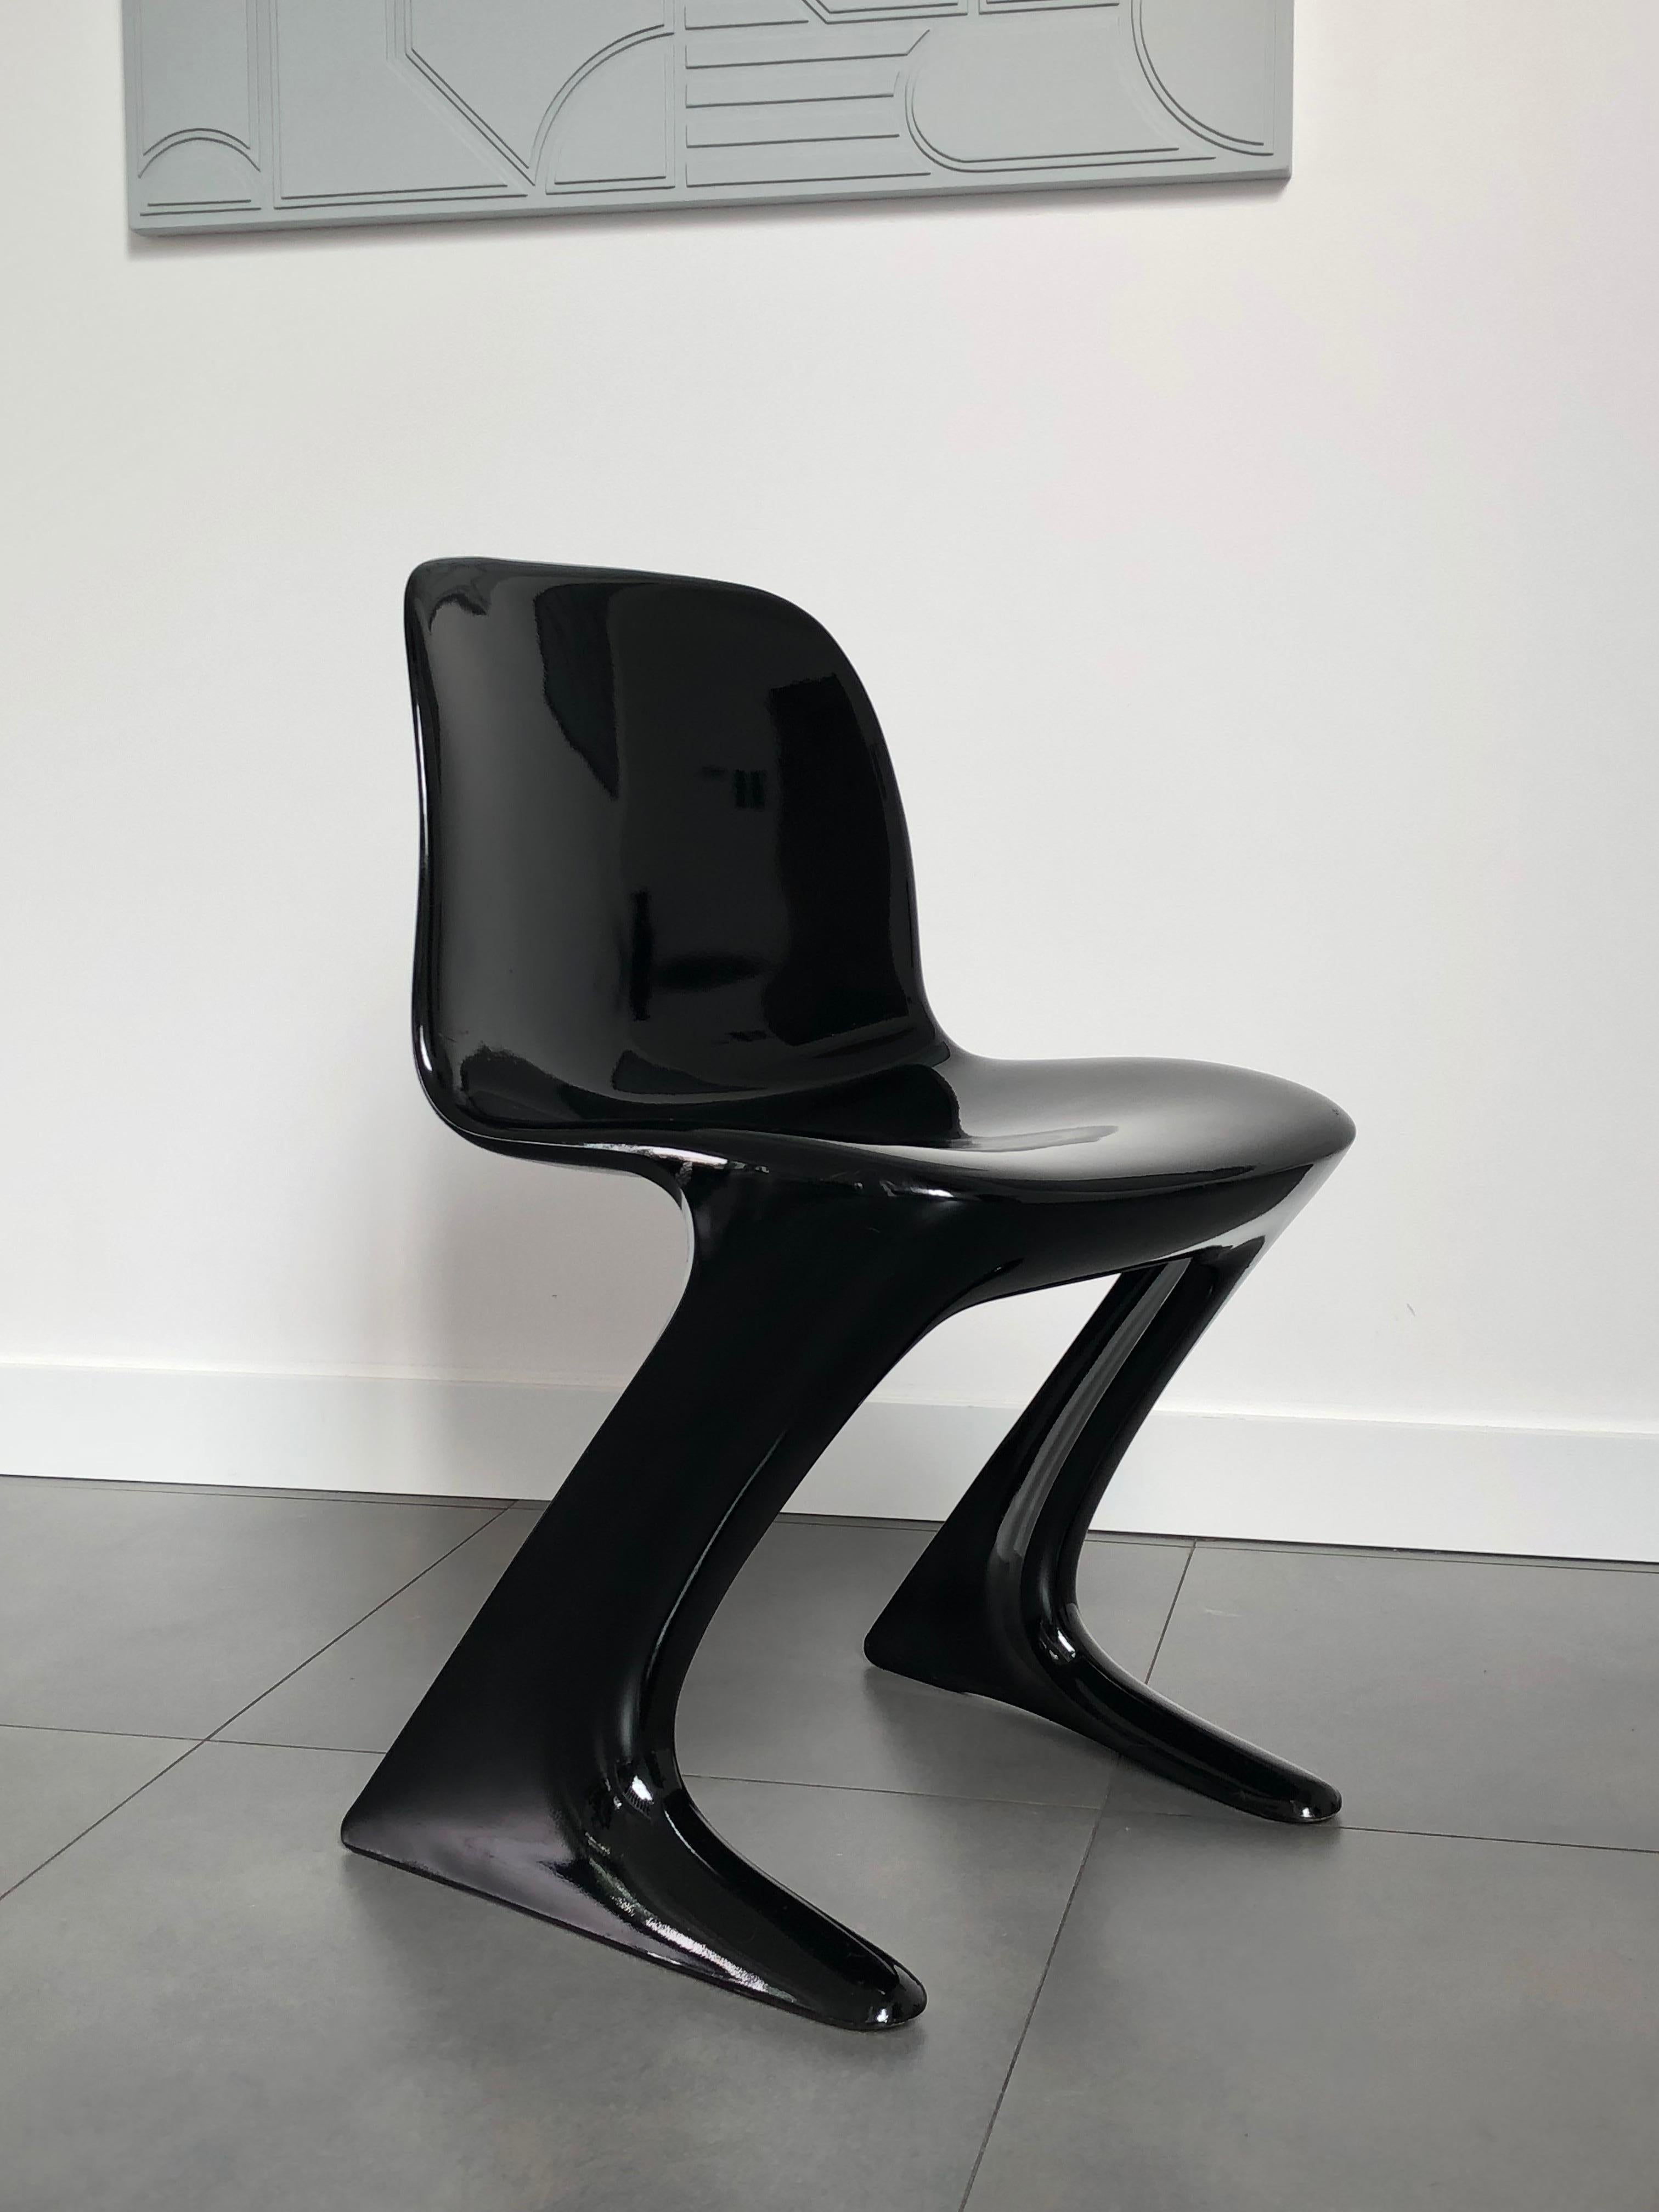 Cet ensemble est appelé Calle Z. Conçue en 1968 en RDA par Ernst Moeckl et Siegfried Mehl, version allemande de la chaise Panton. Également appelée chaise kangourou ou chaise variopur. Produit en Allemagne de l'Est.

Les chaises ont été rénovées -